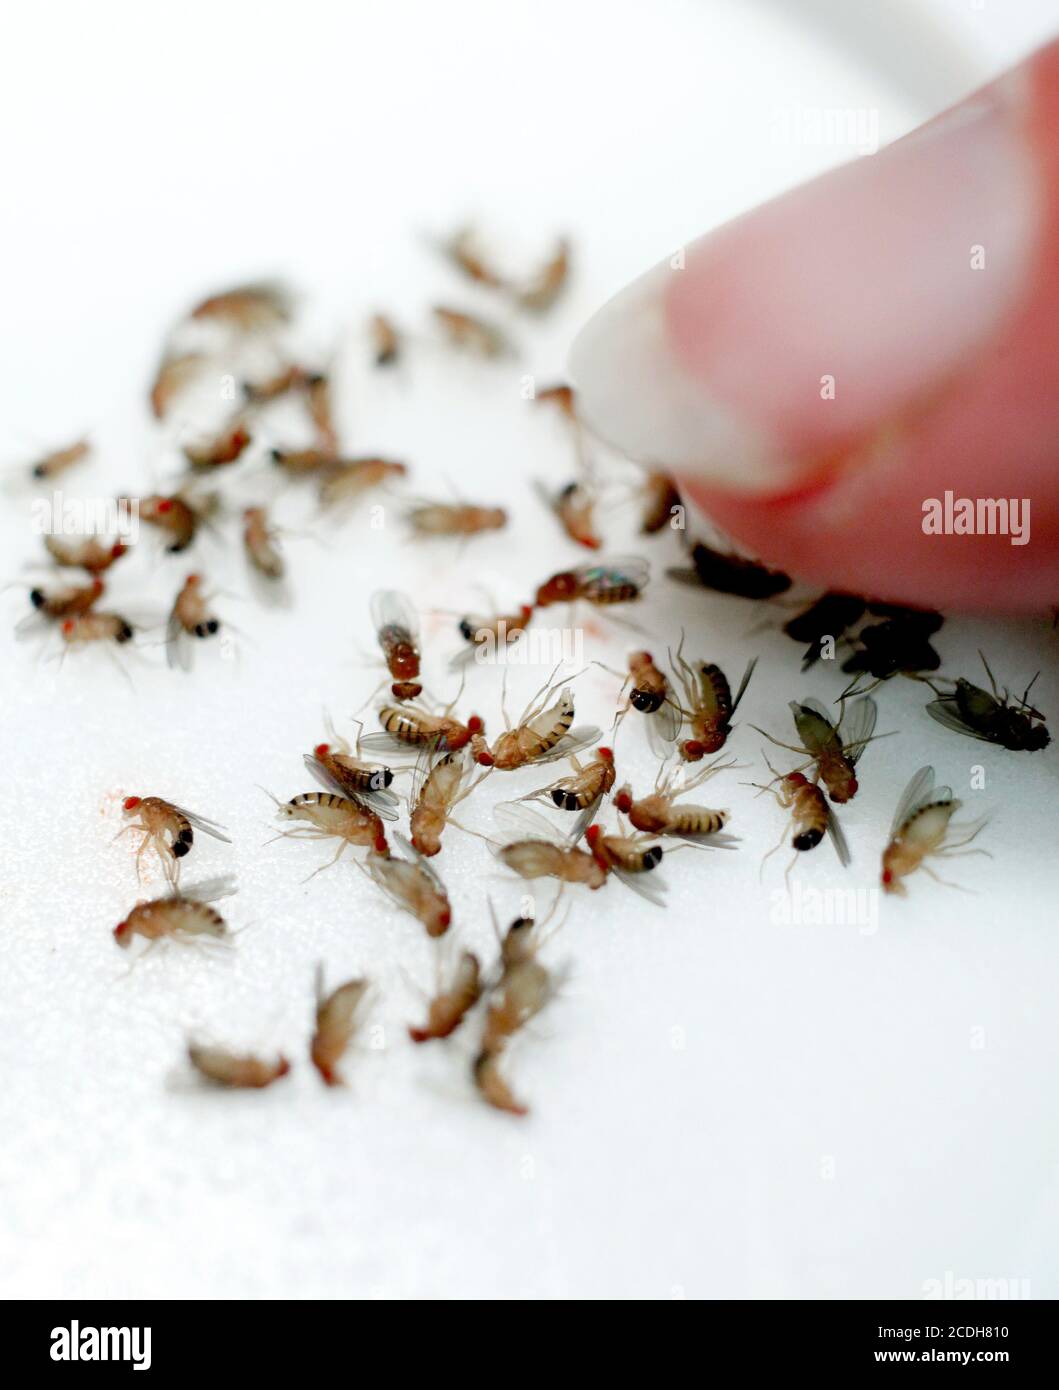 La mosca comune della frutta o dell'aceto mosca. Drosophila melanogaster è una specie di mosca della famiglia Drosophilidae. Foto Gippe Gustafsson Foto Stock